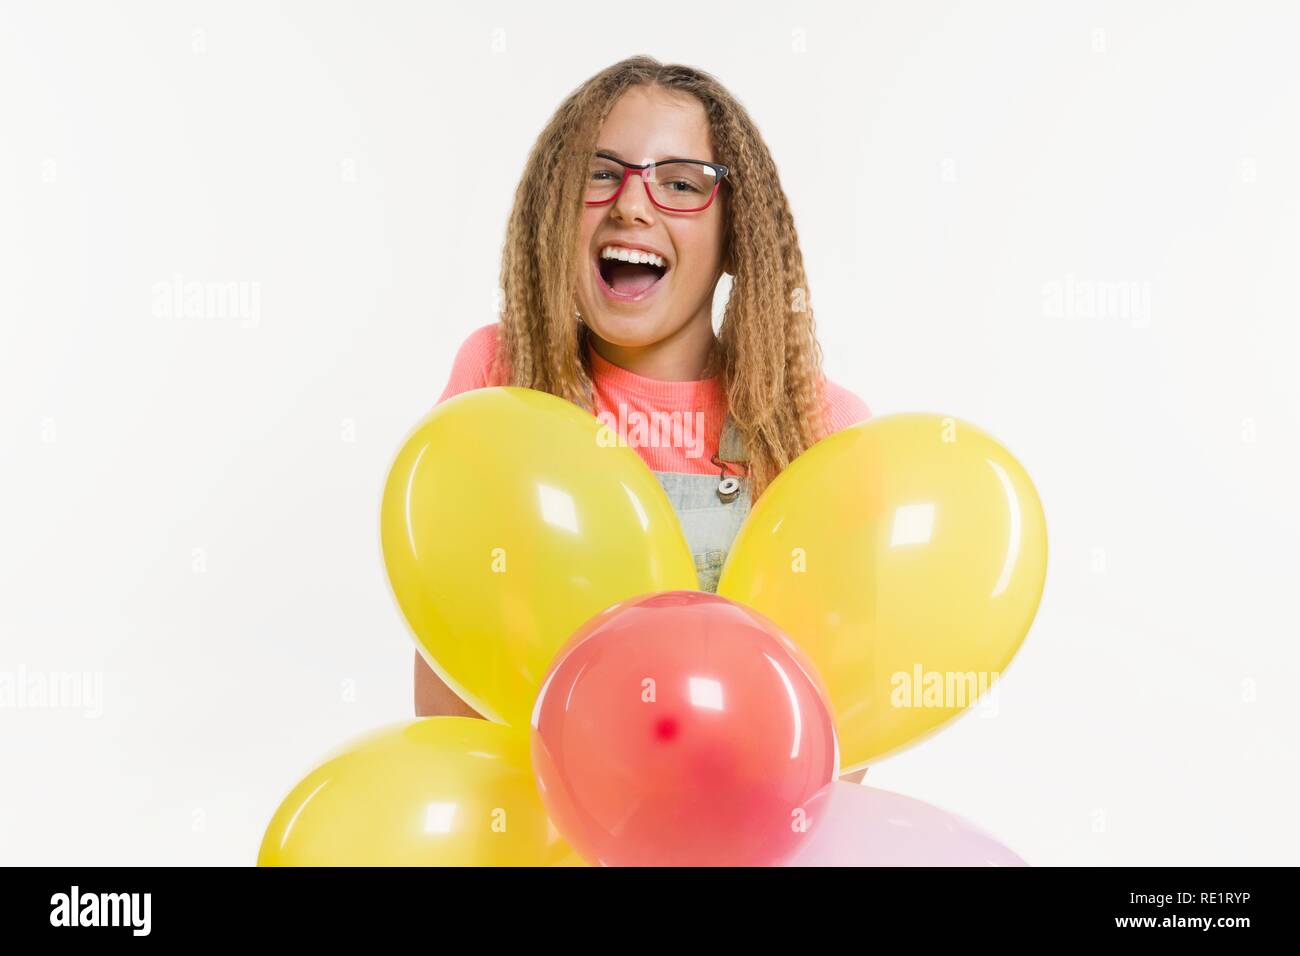 Gerne Party girl Teenager 12-13 Jahre alt mit Luftballons. Weißer Hintergrund Stockfoto